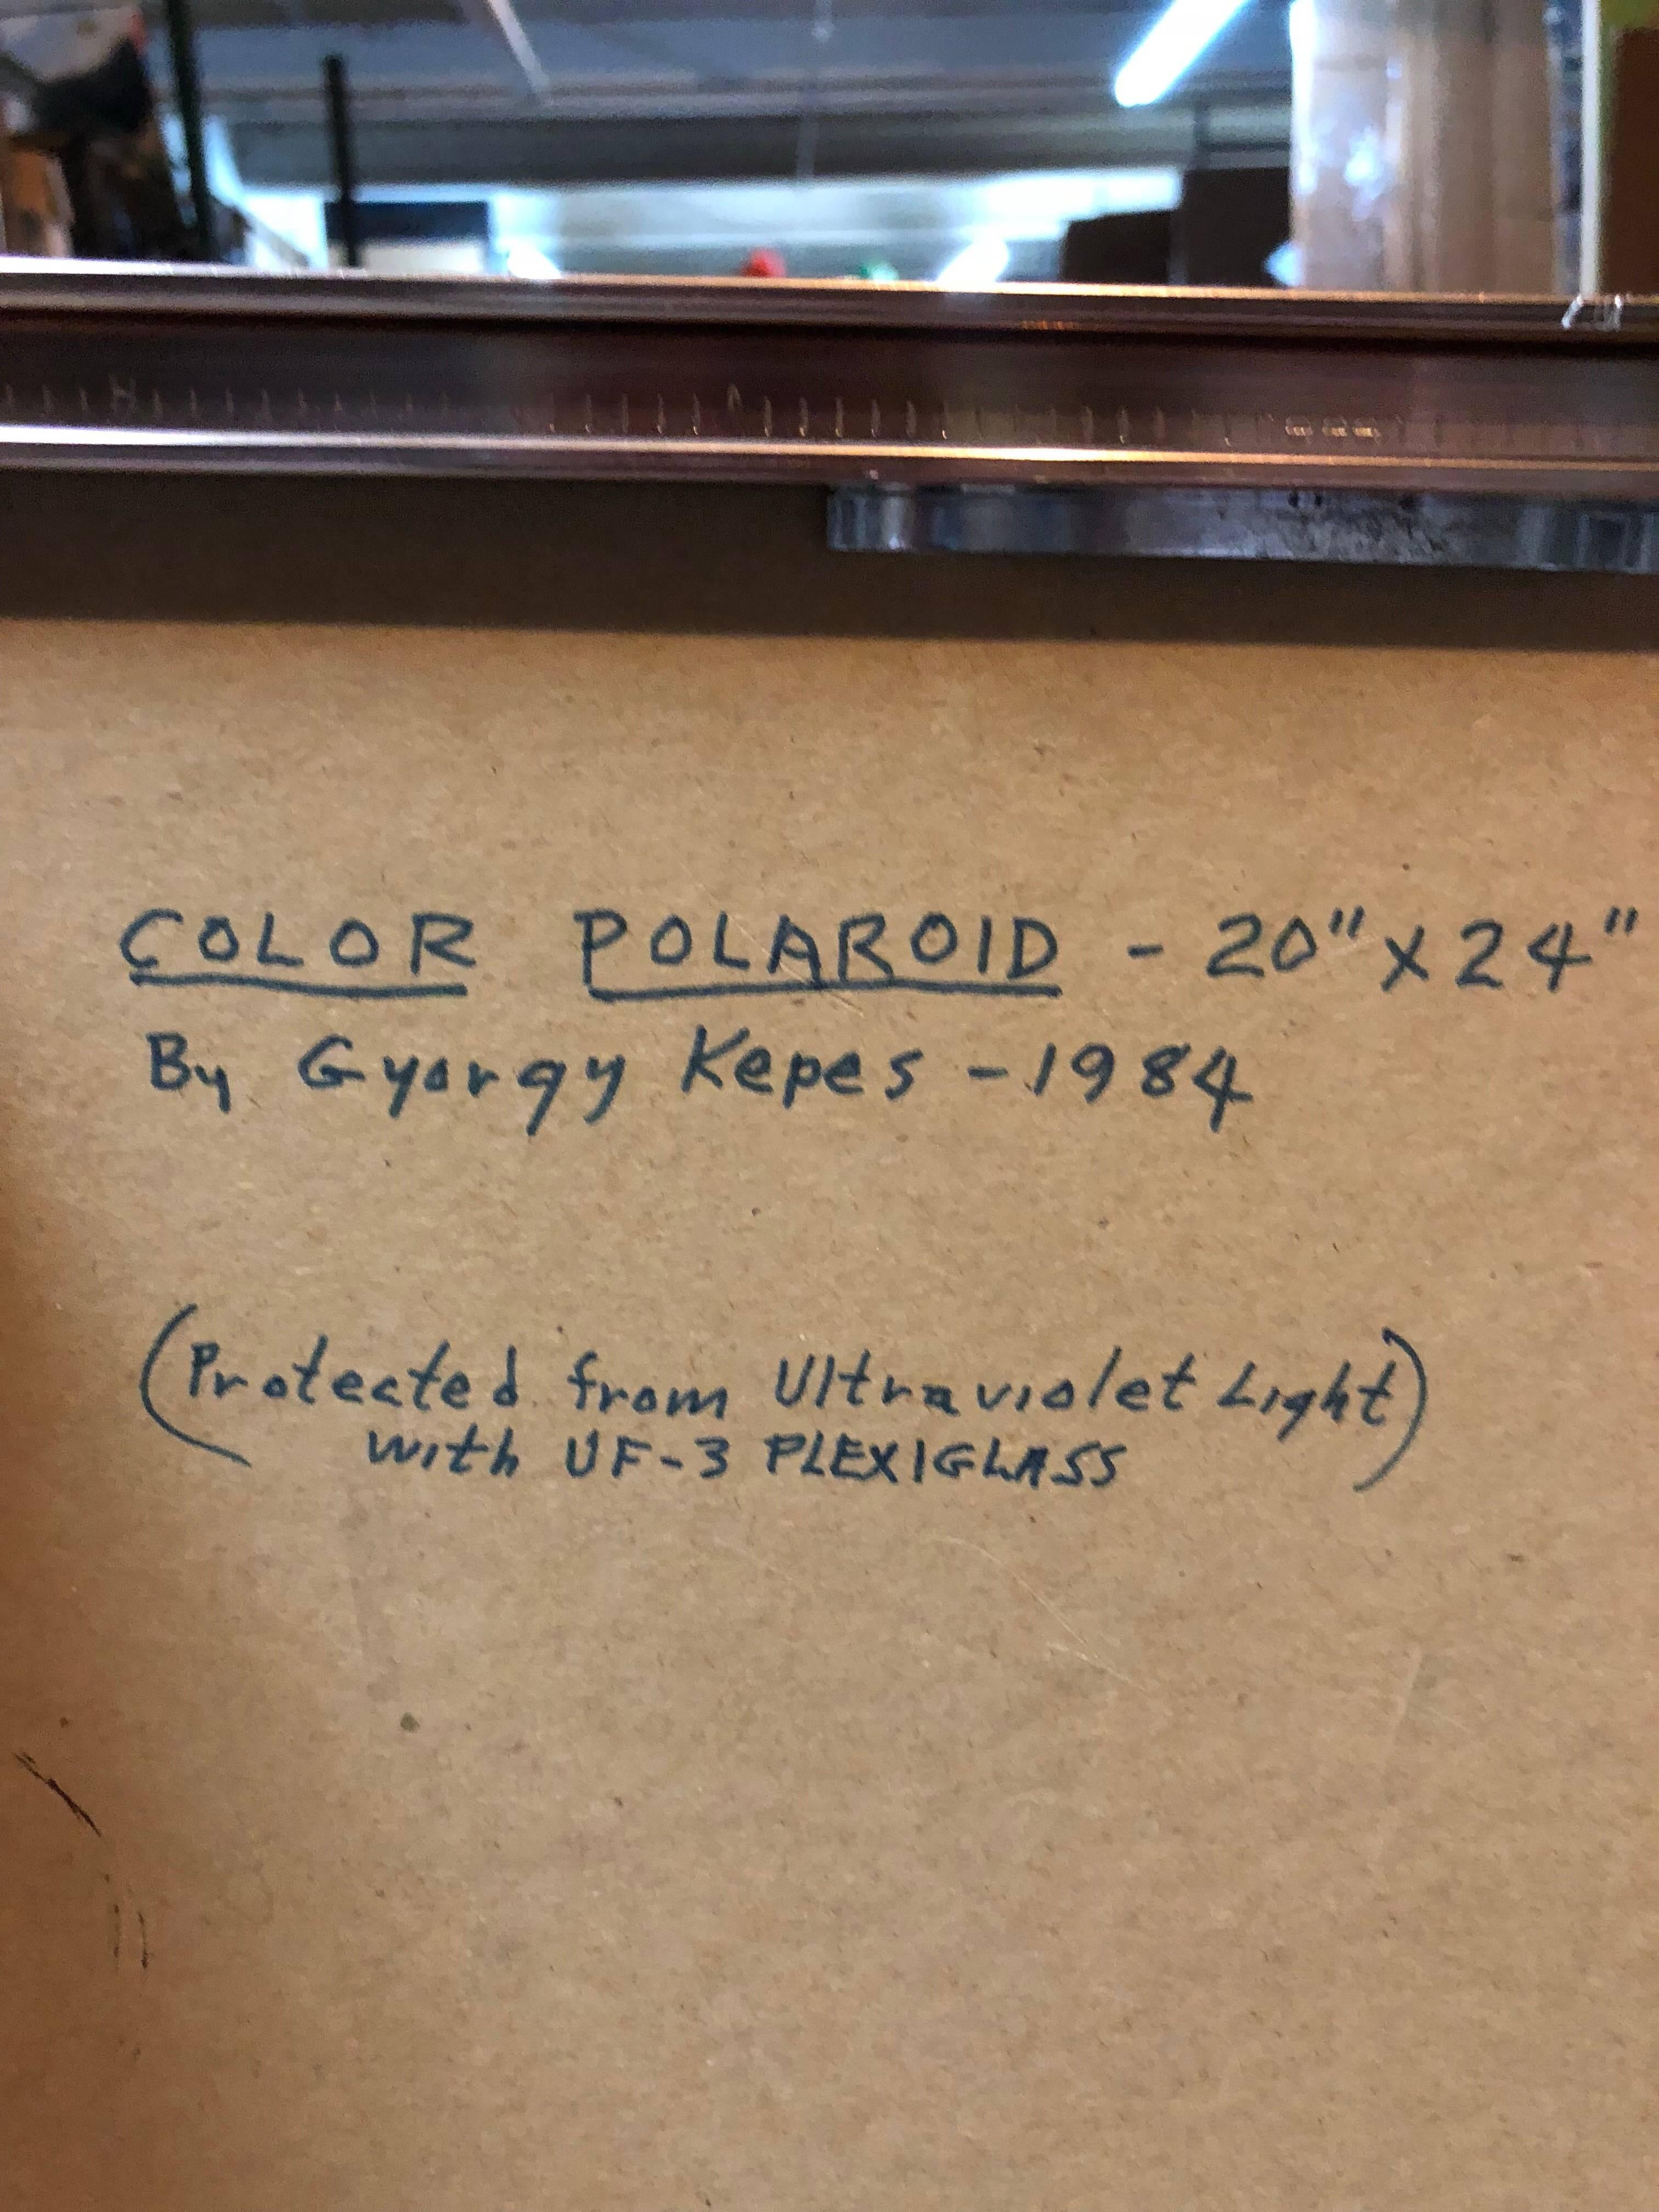 polaroid 20x24 camera for sale